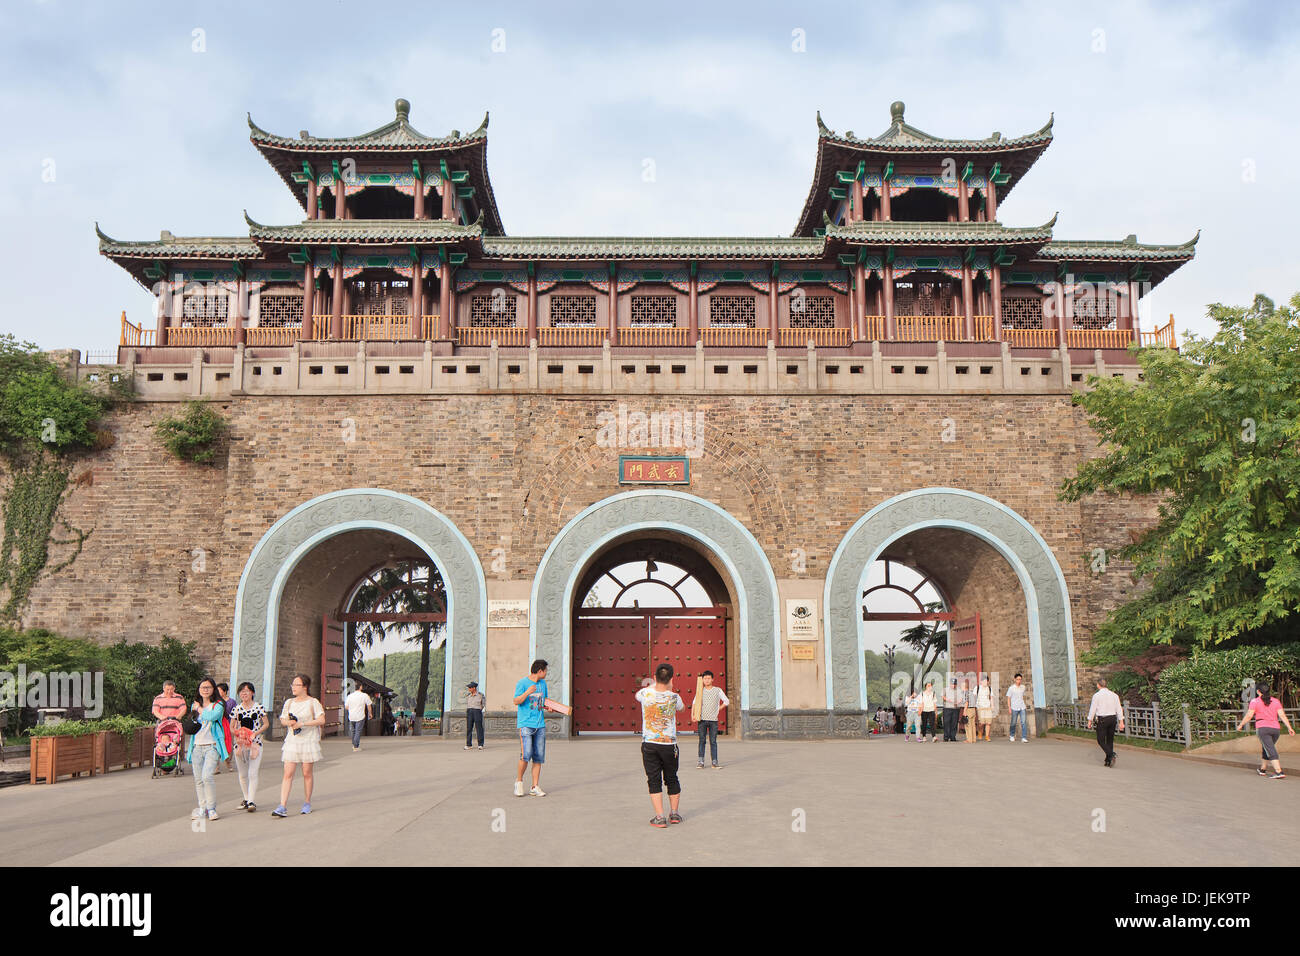 NANJING-26 MAI 2014. Ancienne porte de Zhongshan zone pittoresque. Nanjing, capitale de la province du Jiangsu, est une ville avec une histoire très riche. Banque D'Images